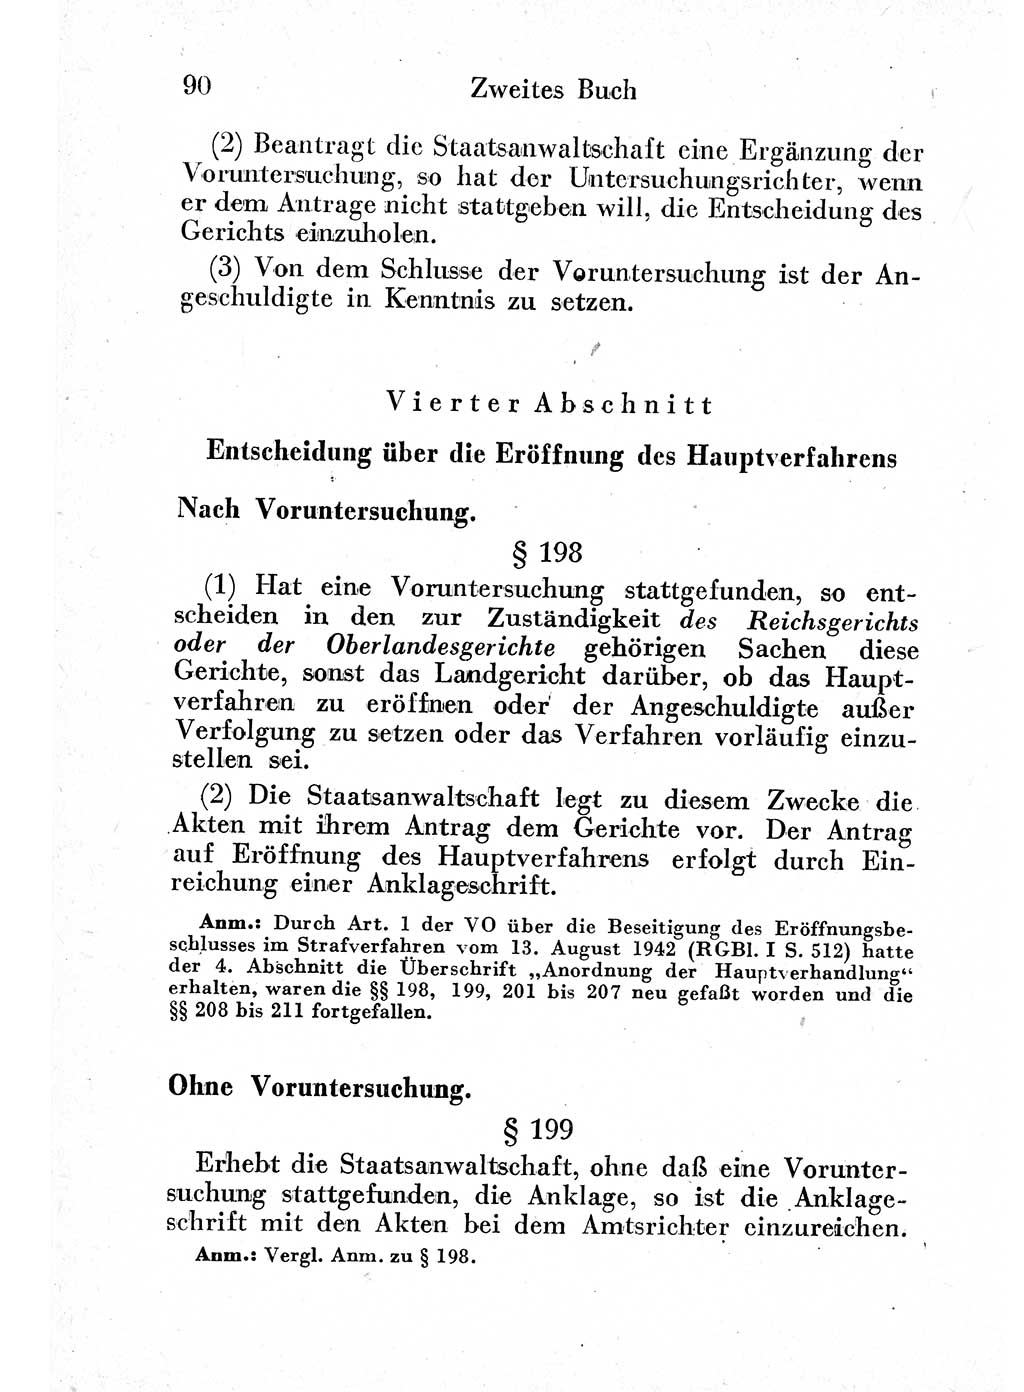 Strafprozeßordnung (StPO), Gerichtsverfassungsgesetz (GVG) und zahlreiche Nebengesetze der sowjetischen Besatzungszone (SBZ) in Deutschland 1949, Seite 90 (StPO GVG Ges. SBZ Dtl. 1949, S. 90)